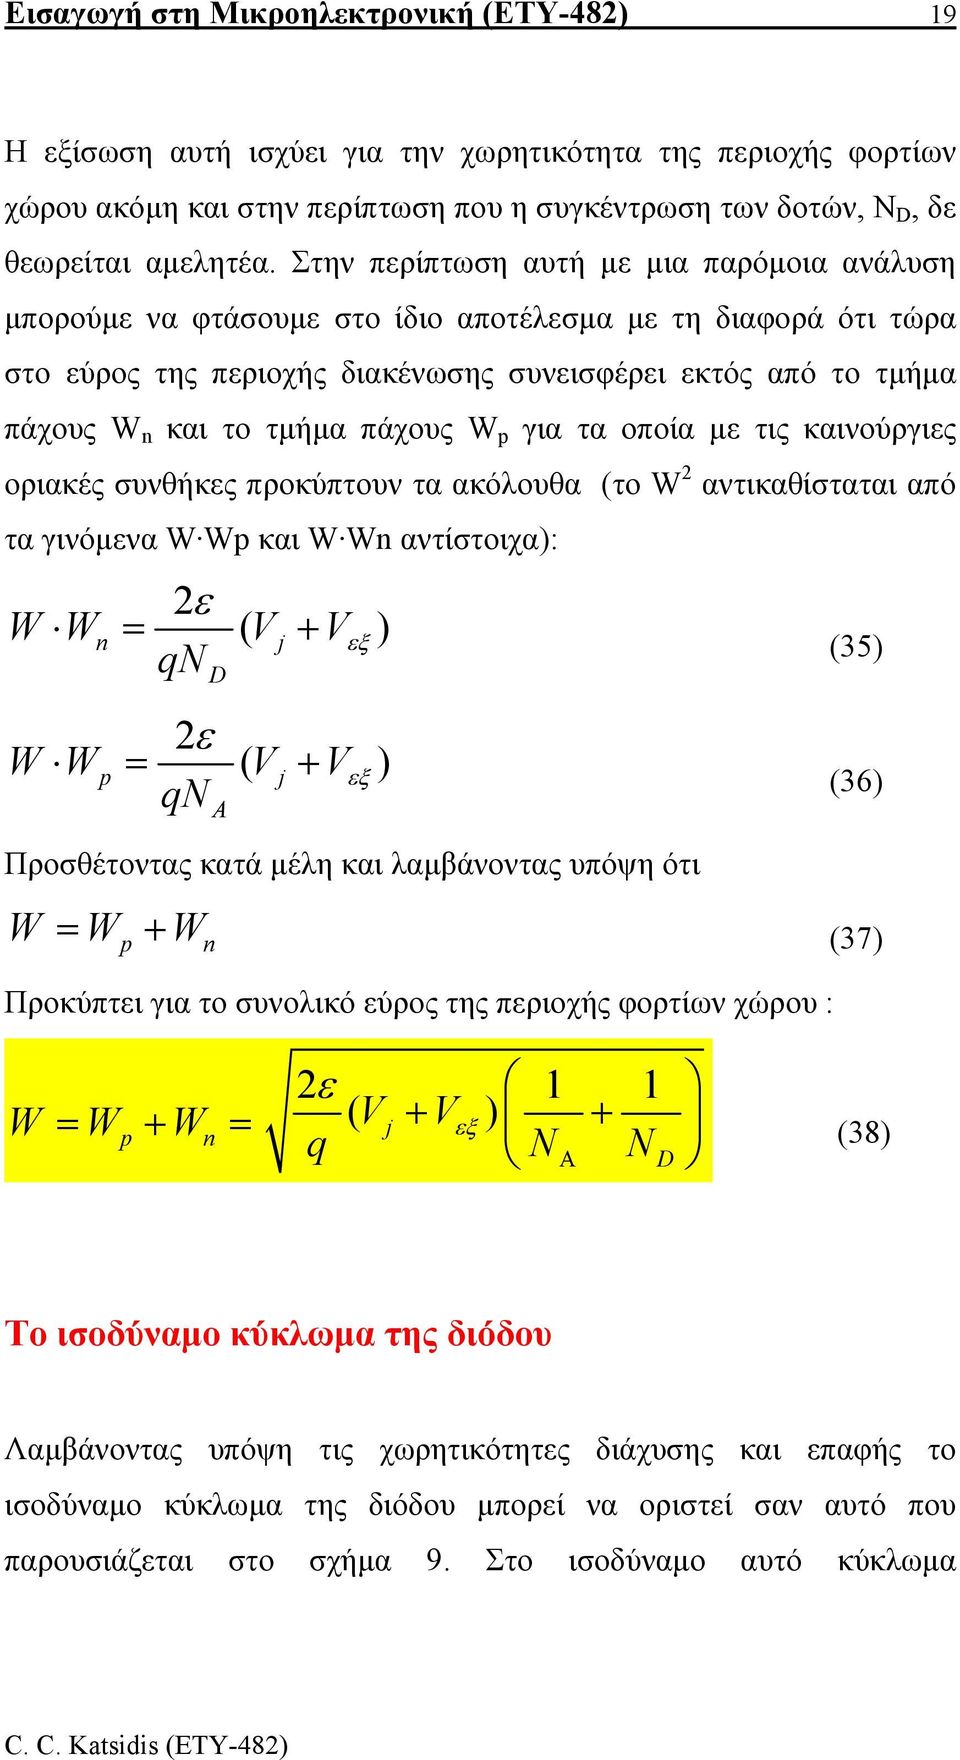 πάχους W για τα οποία µε τις καινούργιες οριακές συνθήκες προκύπτουν τα ακόλουθα (το W αντικαθίσταται από τα γινόµενα W W και W Wn αντίστοιχα): ε W Wn = ( Vj + Vεξ ) qn ε W W = ( Vj + Vεξ ) qn D A